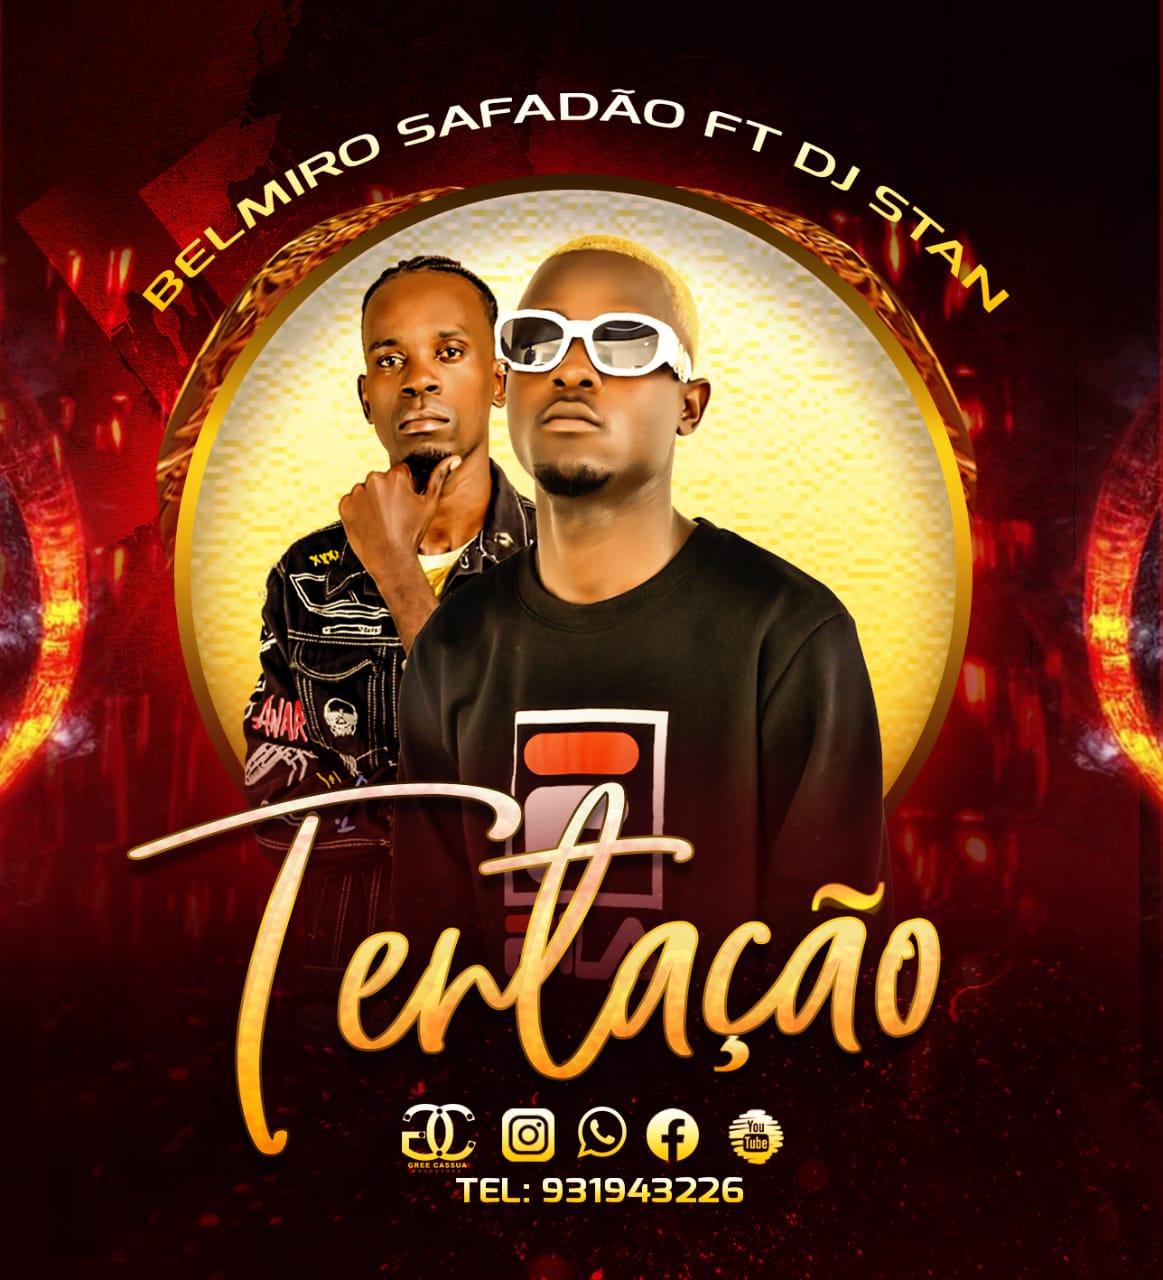 Belmiro Safadão & Dj Stan - Tentação Kuduro Funk mp3 download